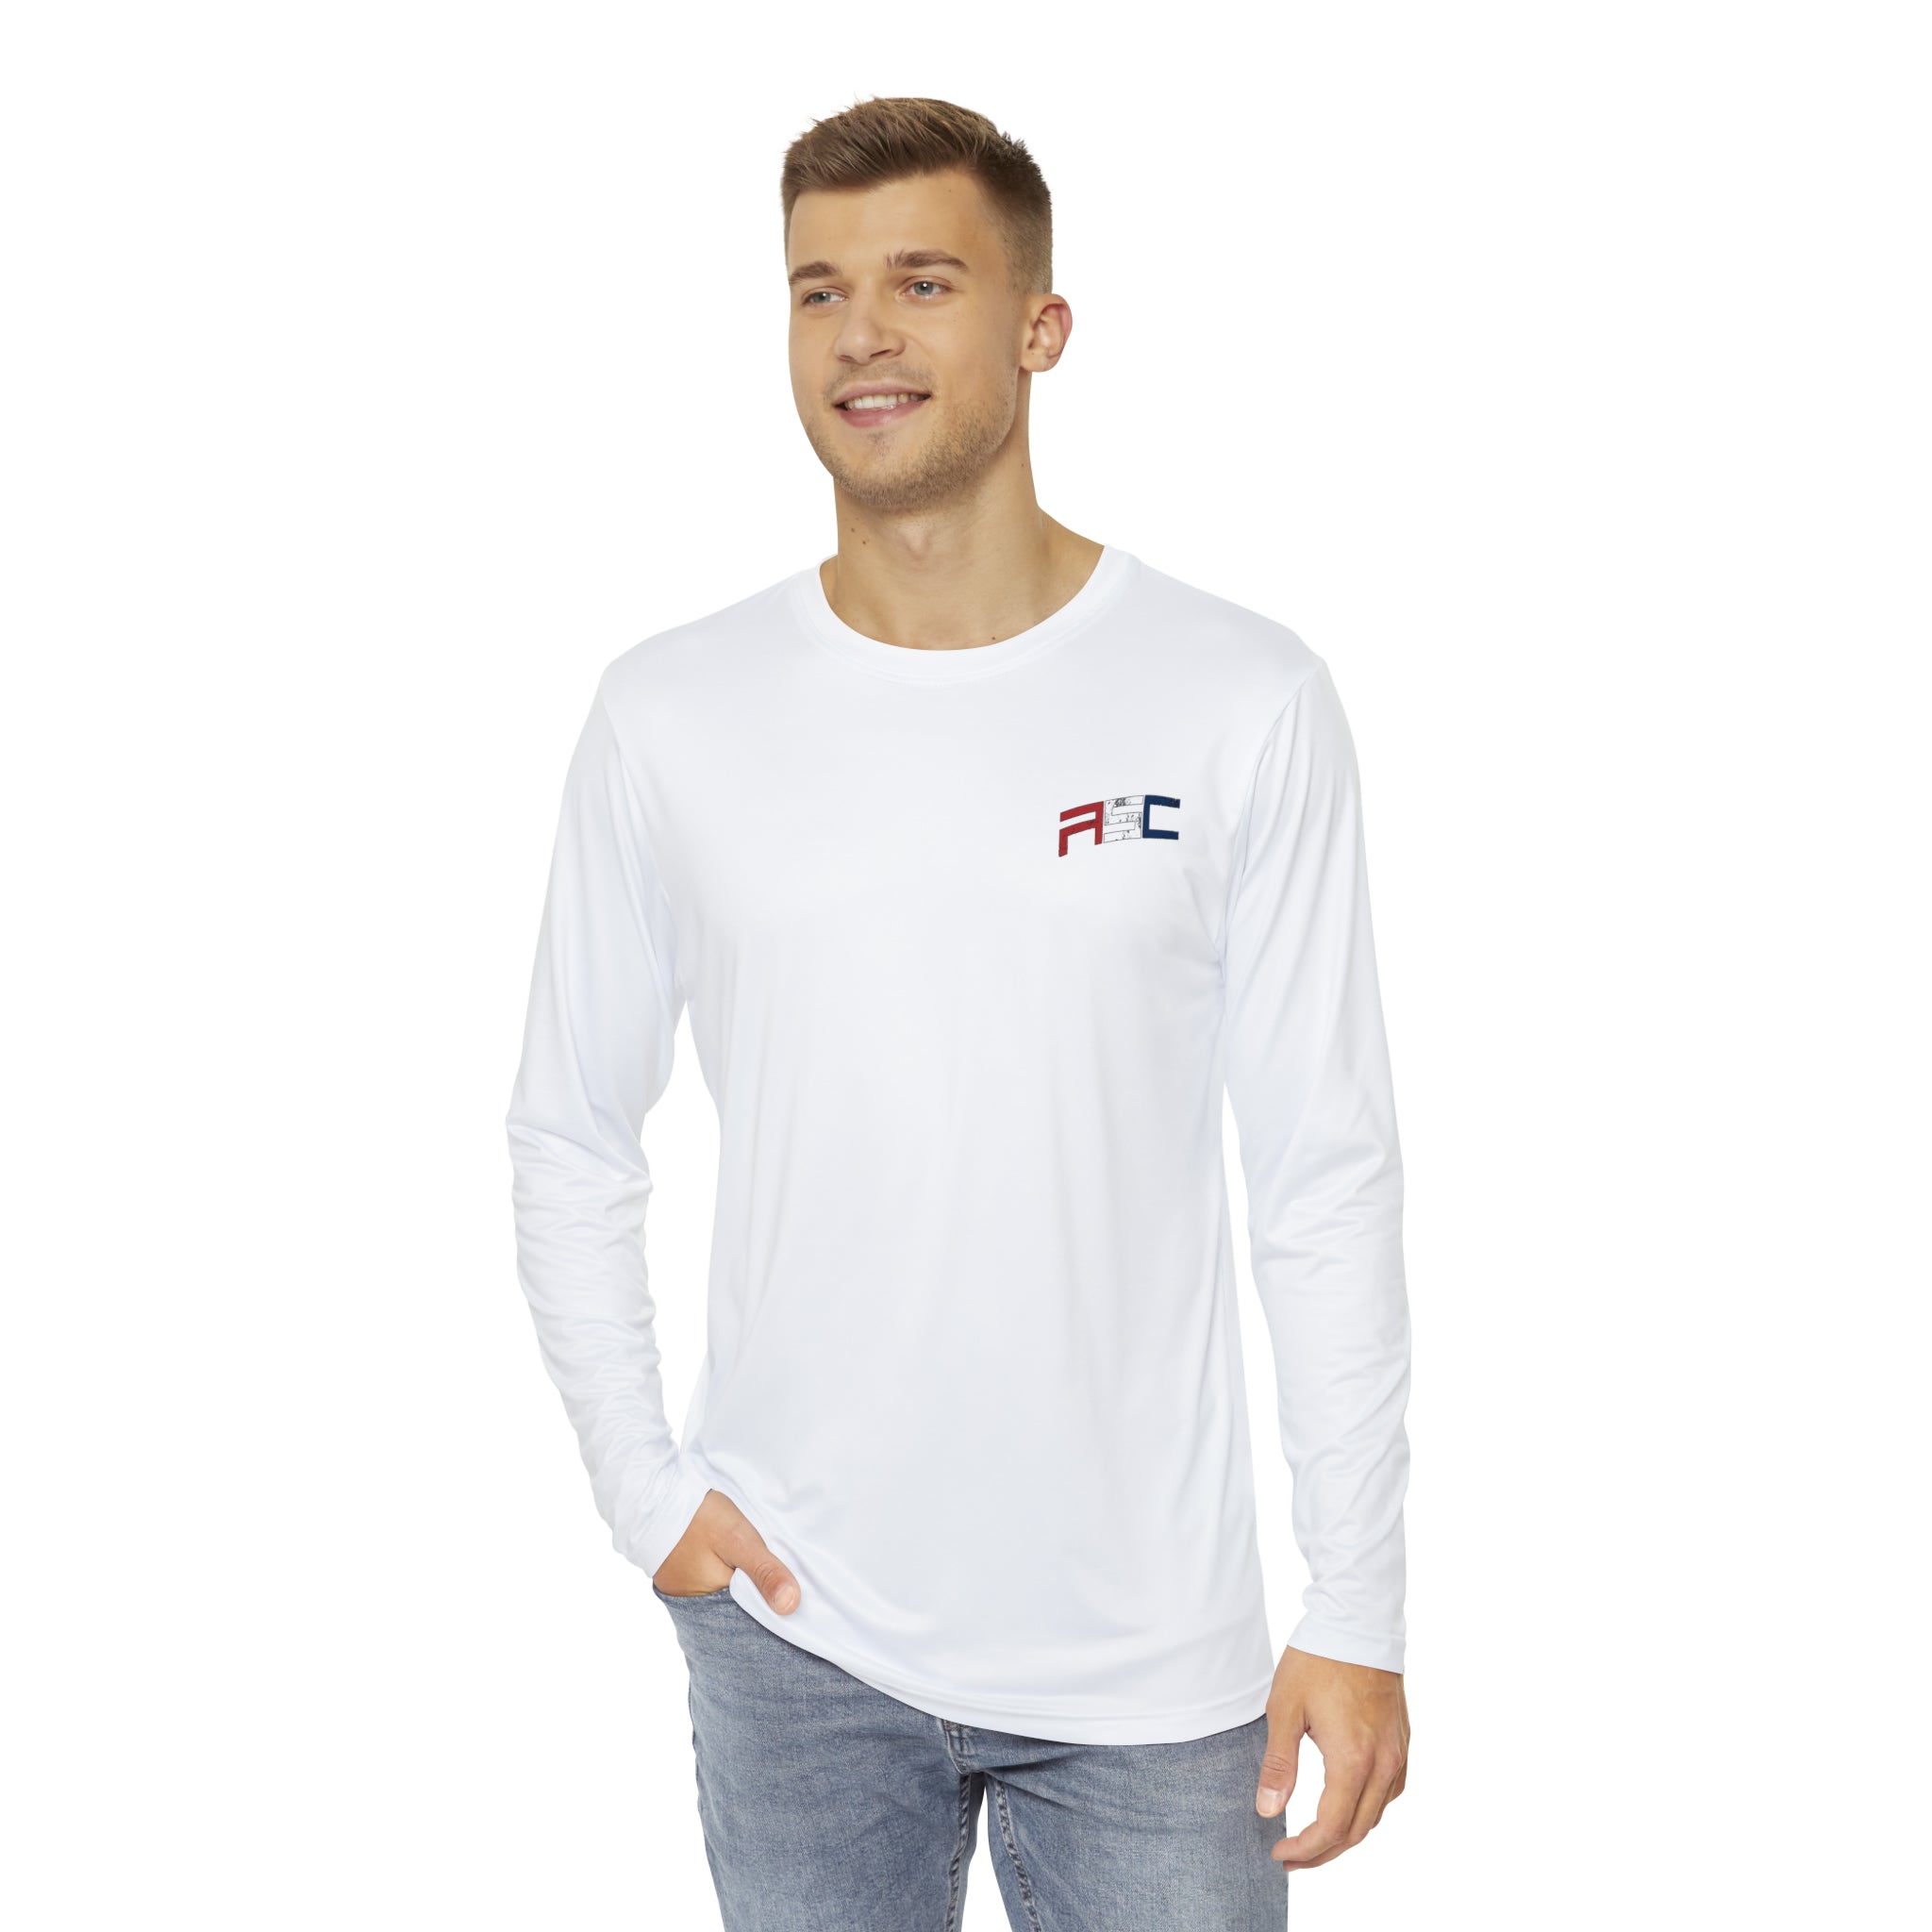 Men's Performance ASC OG Logo Long Sleeve Shirt White